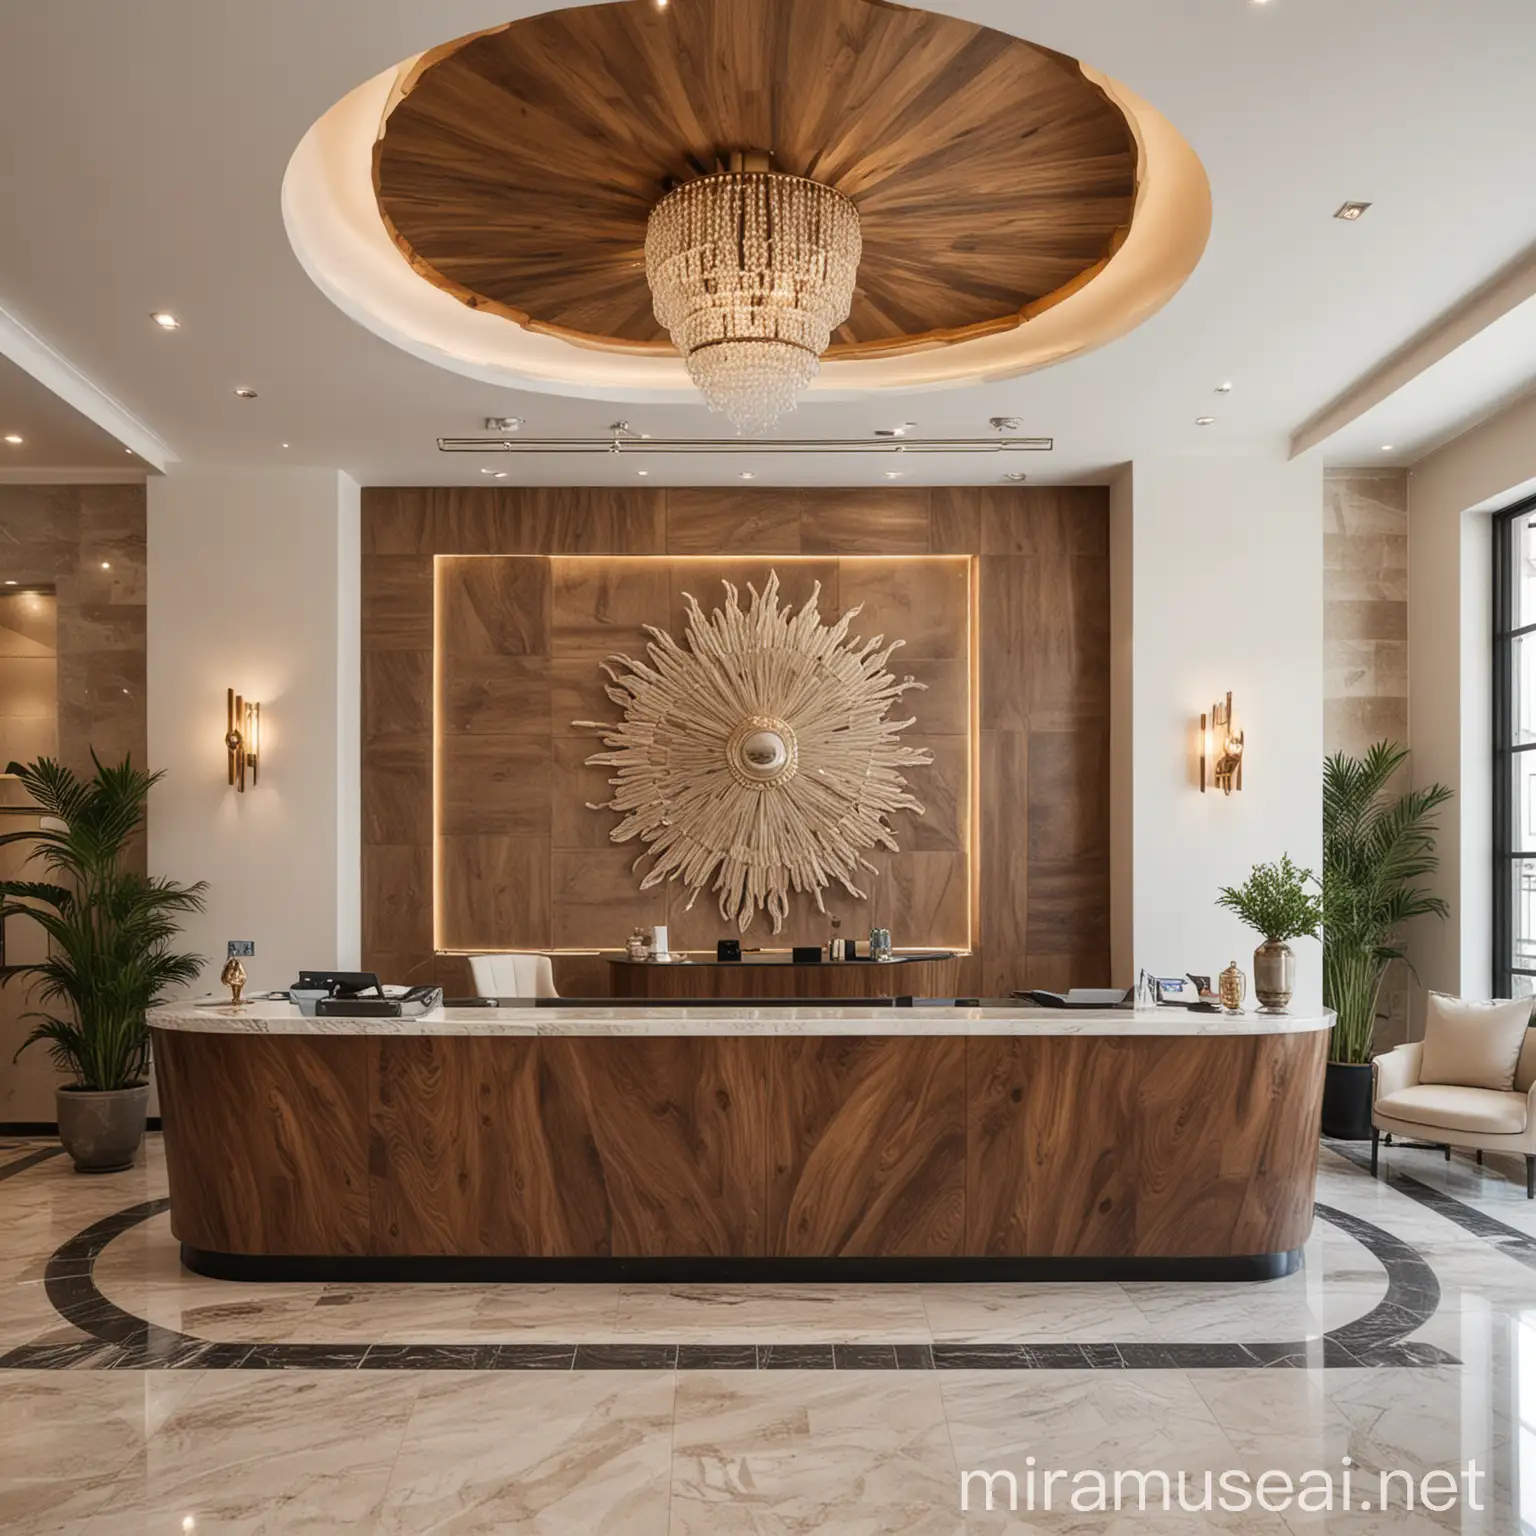 Luxurious MediterraneanThemed Hotel Reception with Modern Design